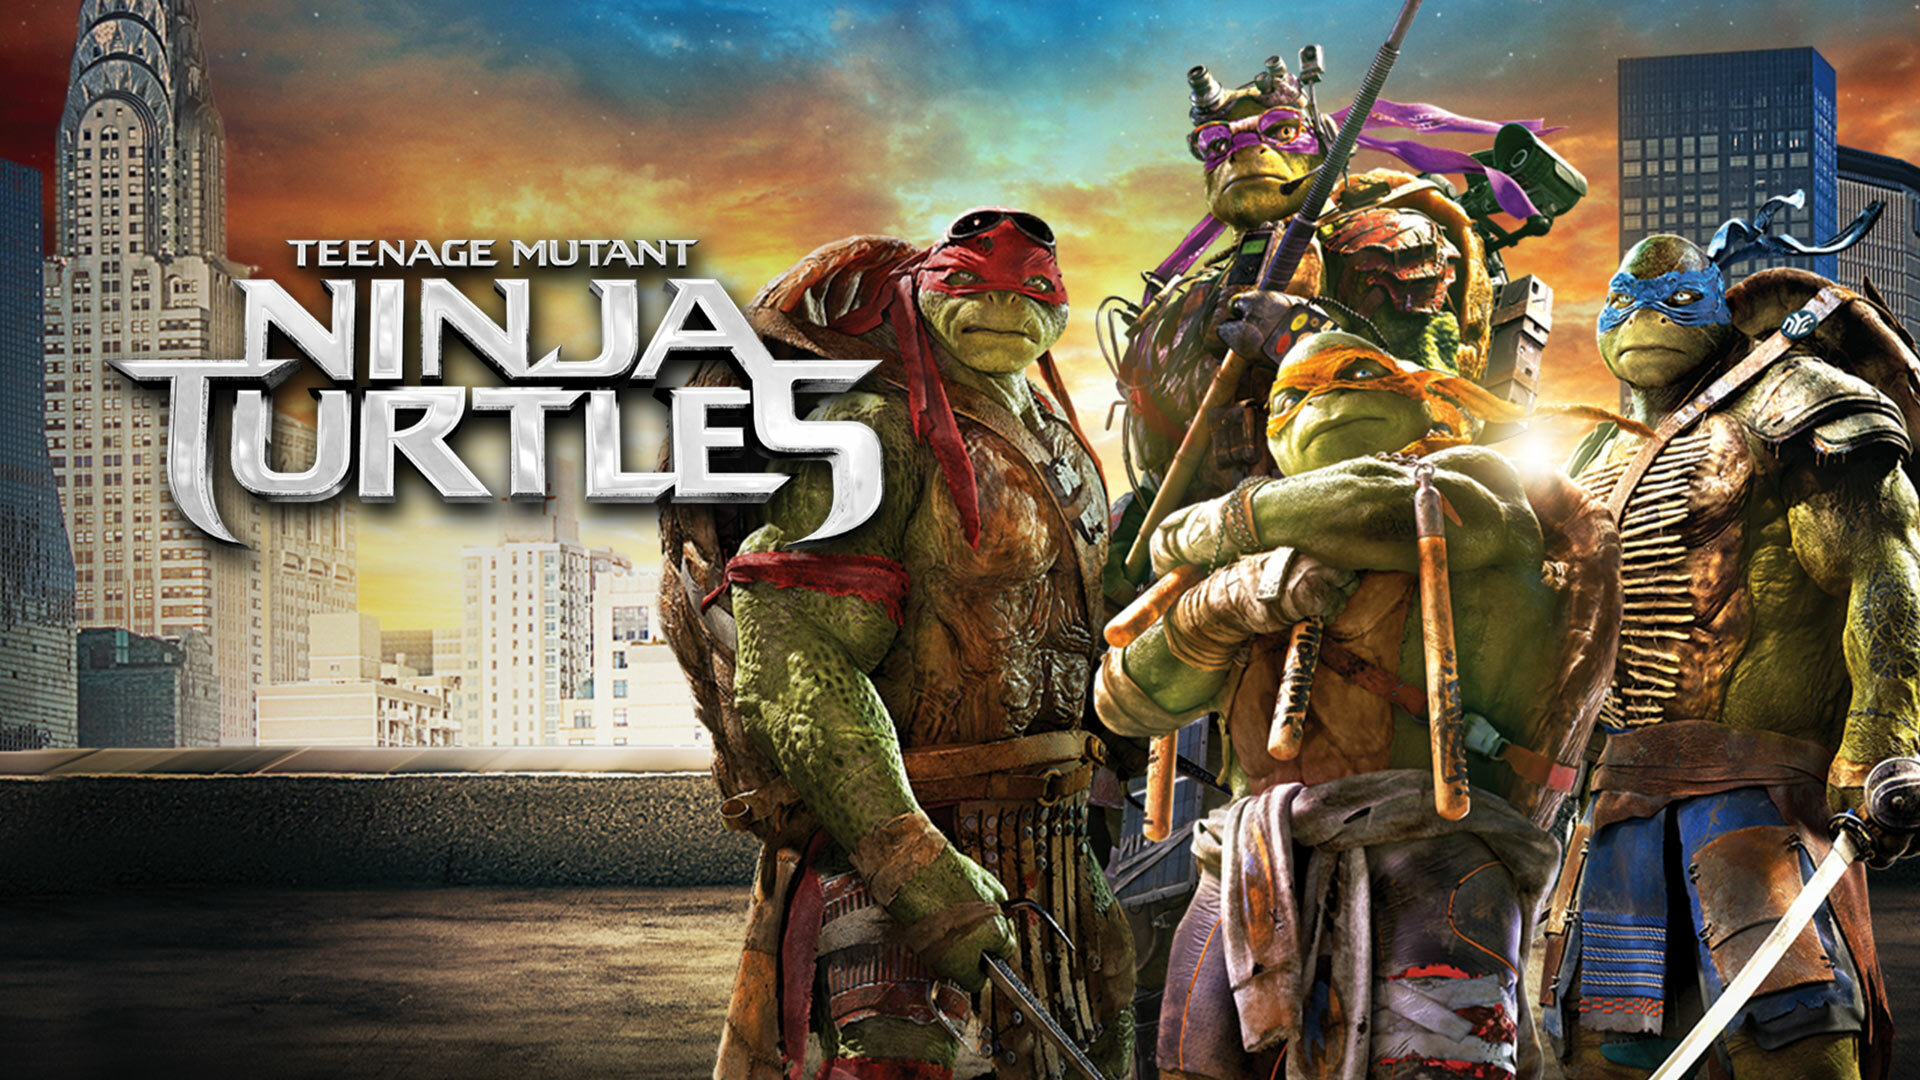 Teenage Mutant Ninja Turtles Watch Full Movie on Paramount Plus